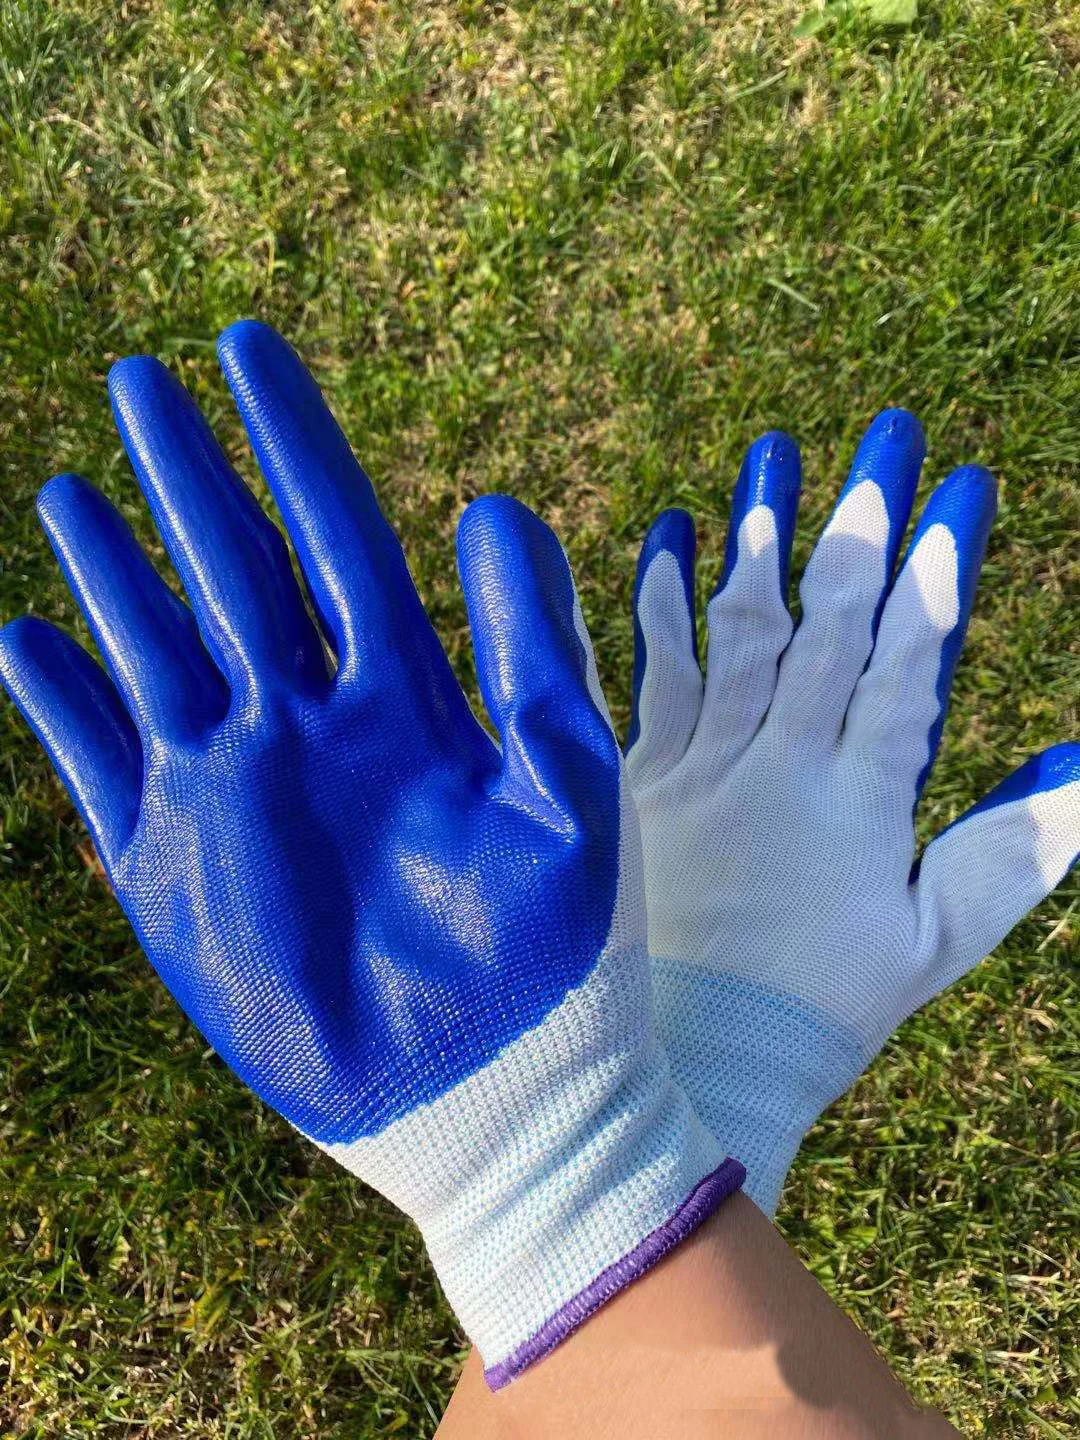 Nylon Durable Garden Work Gloves For Men Women Adult Antiskid